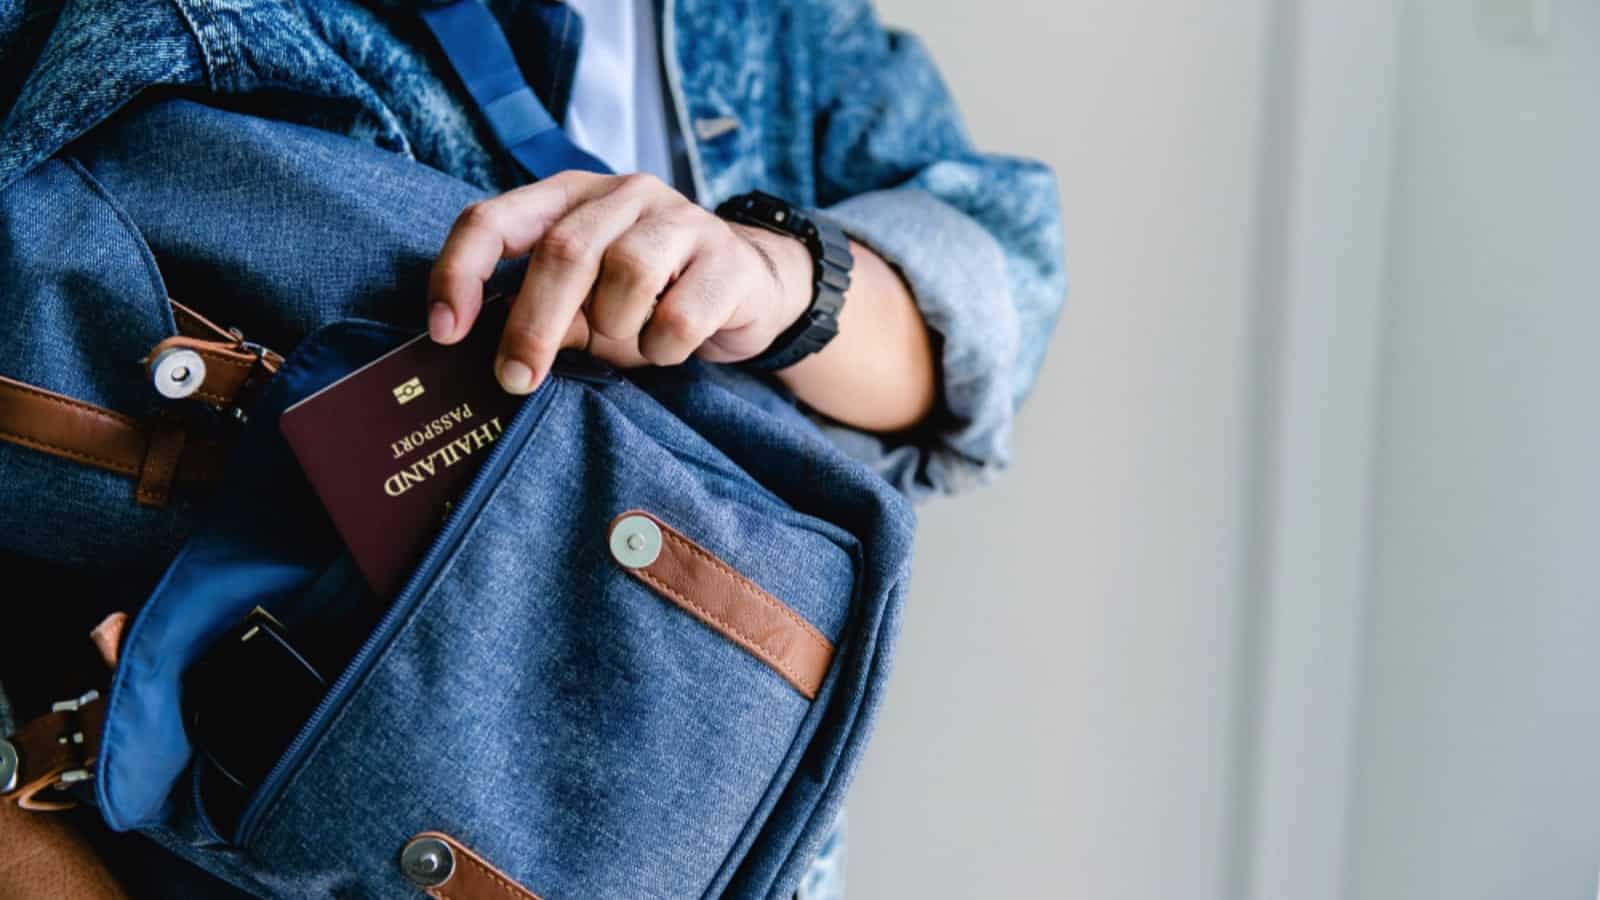 Passport in zipper bag